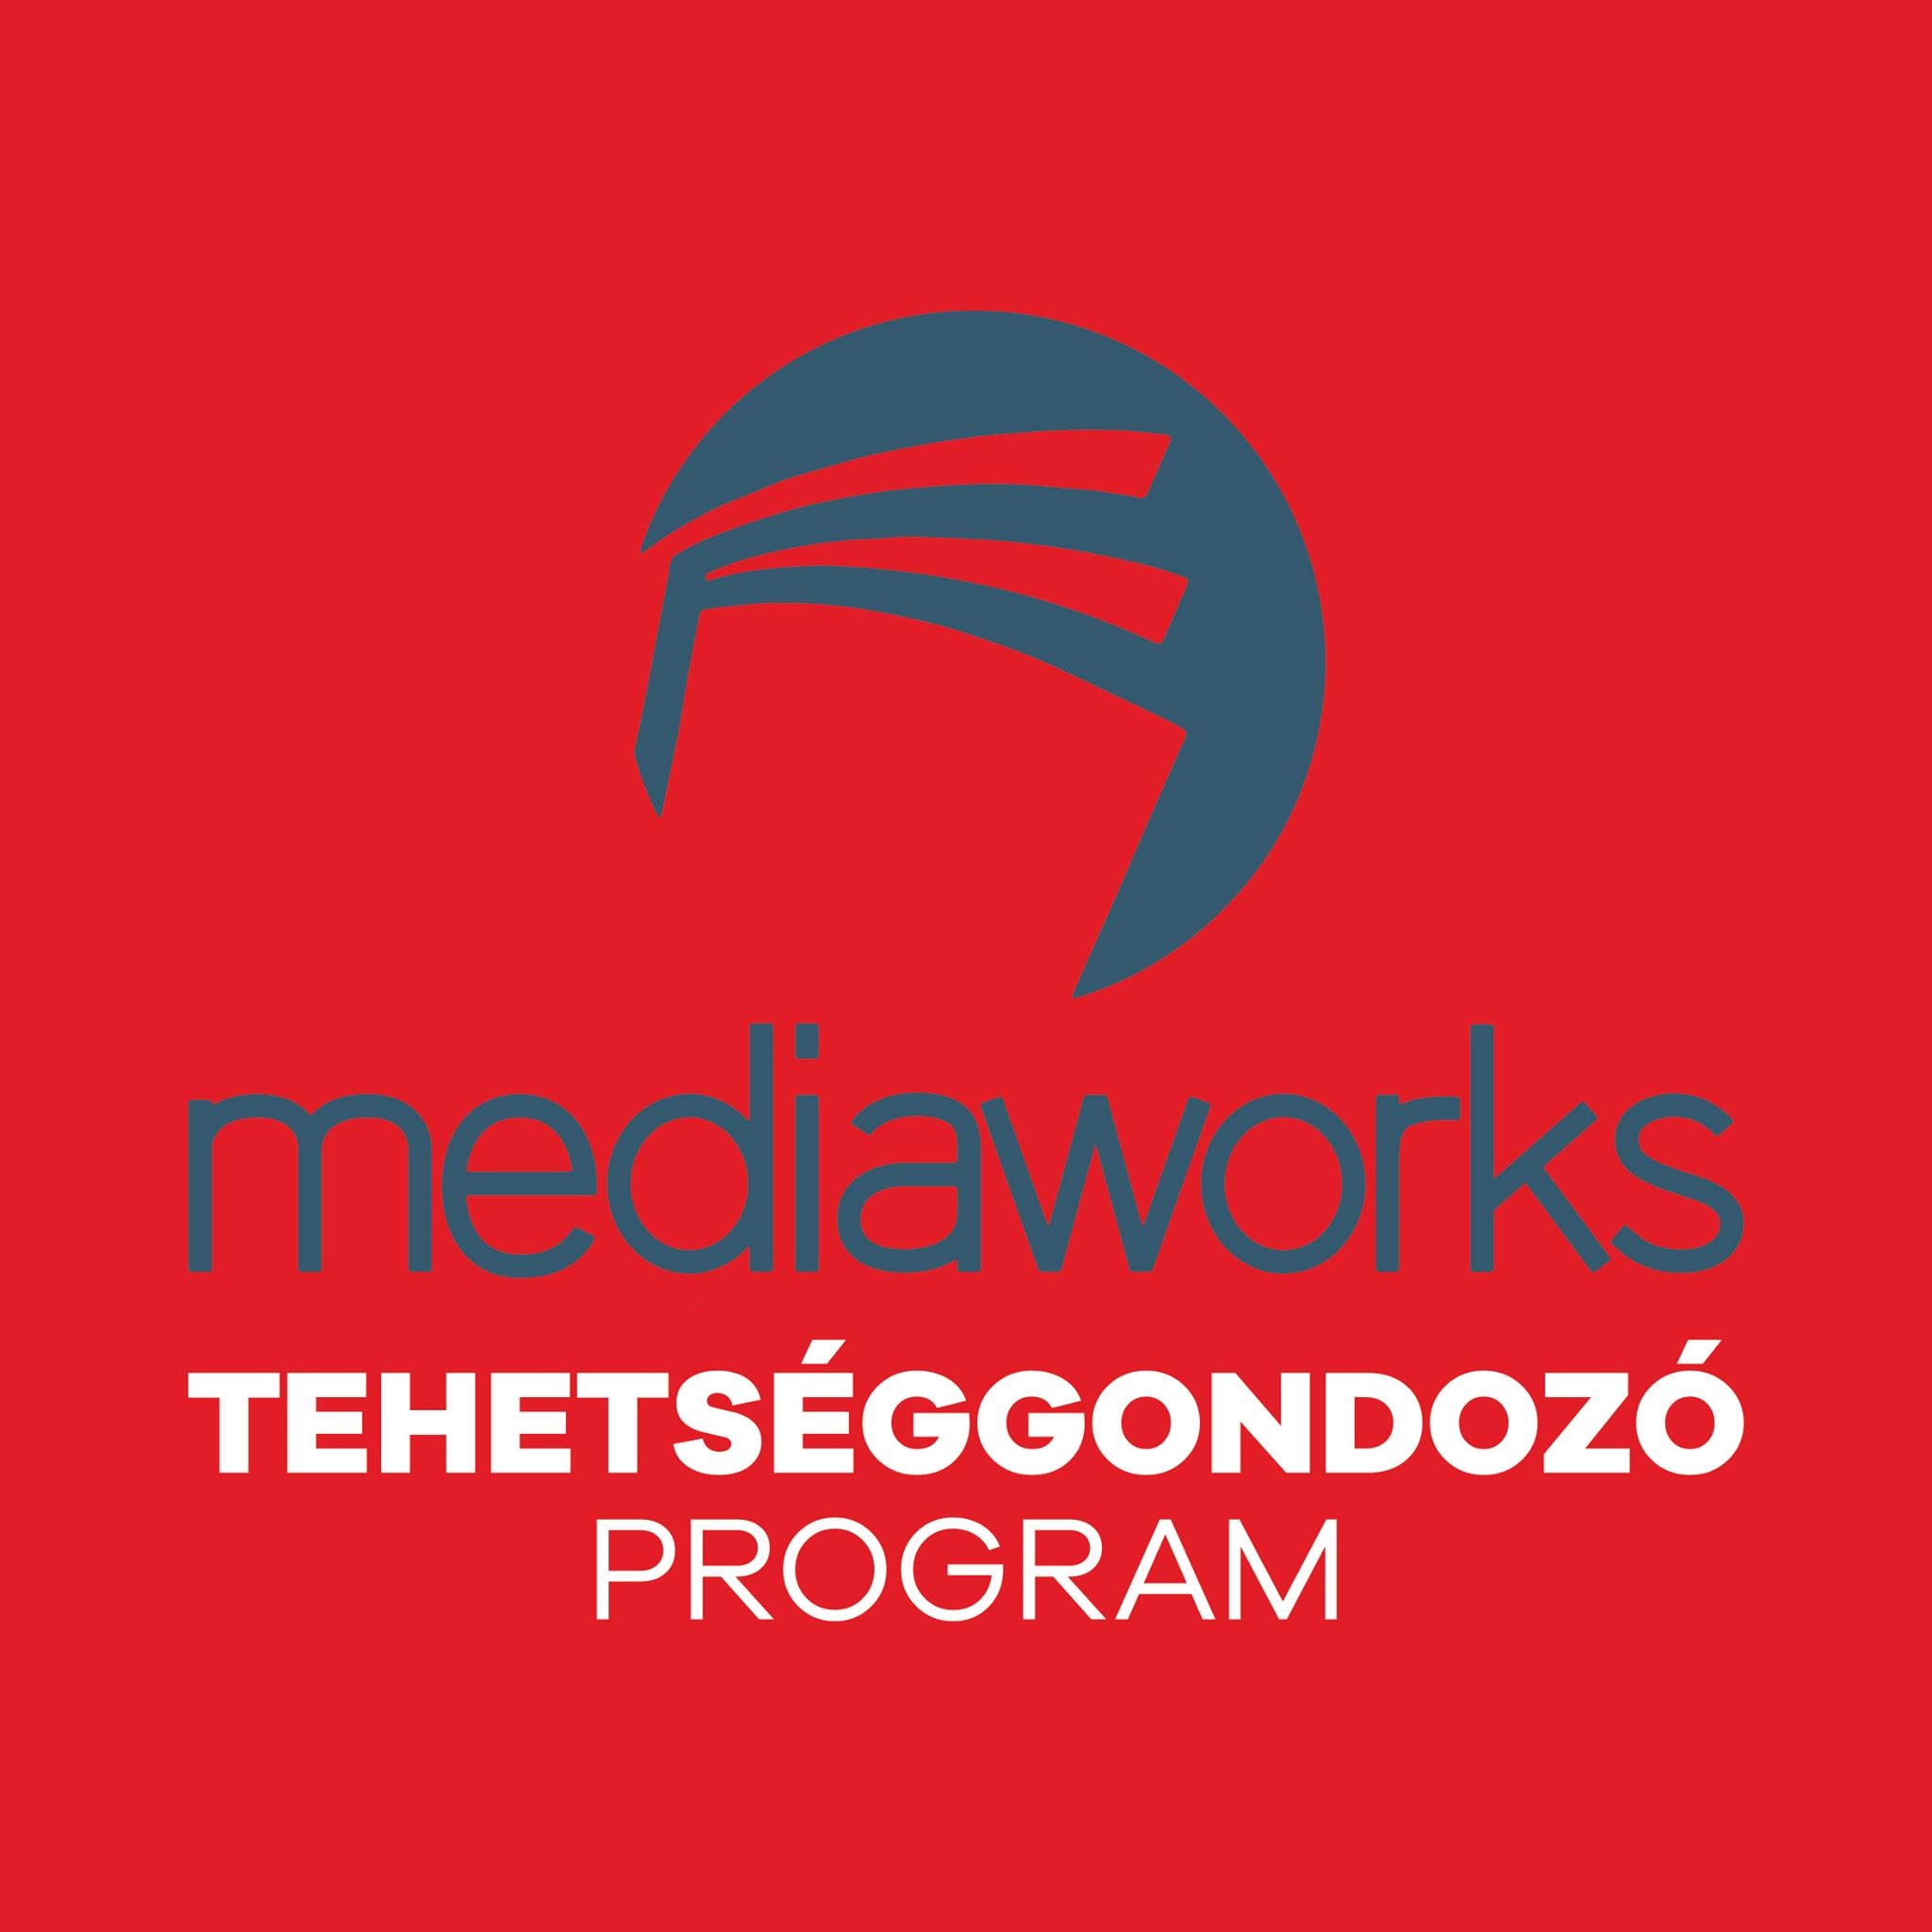 Mediaworks tehetséggondozó program